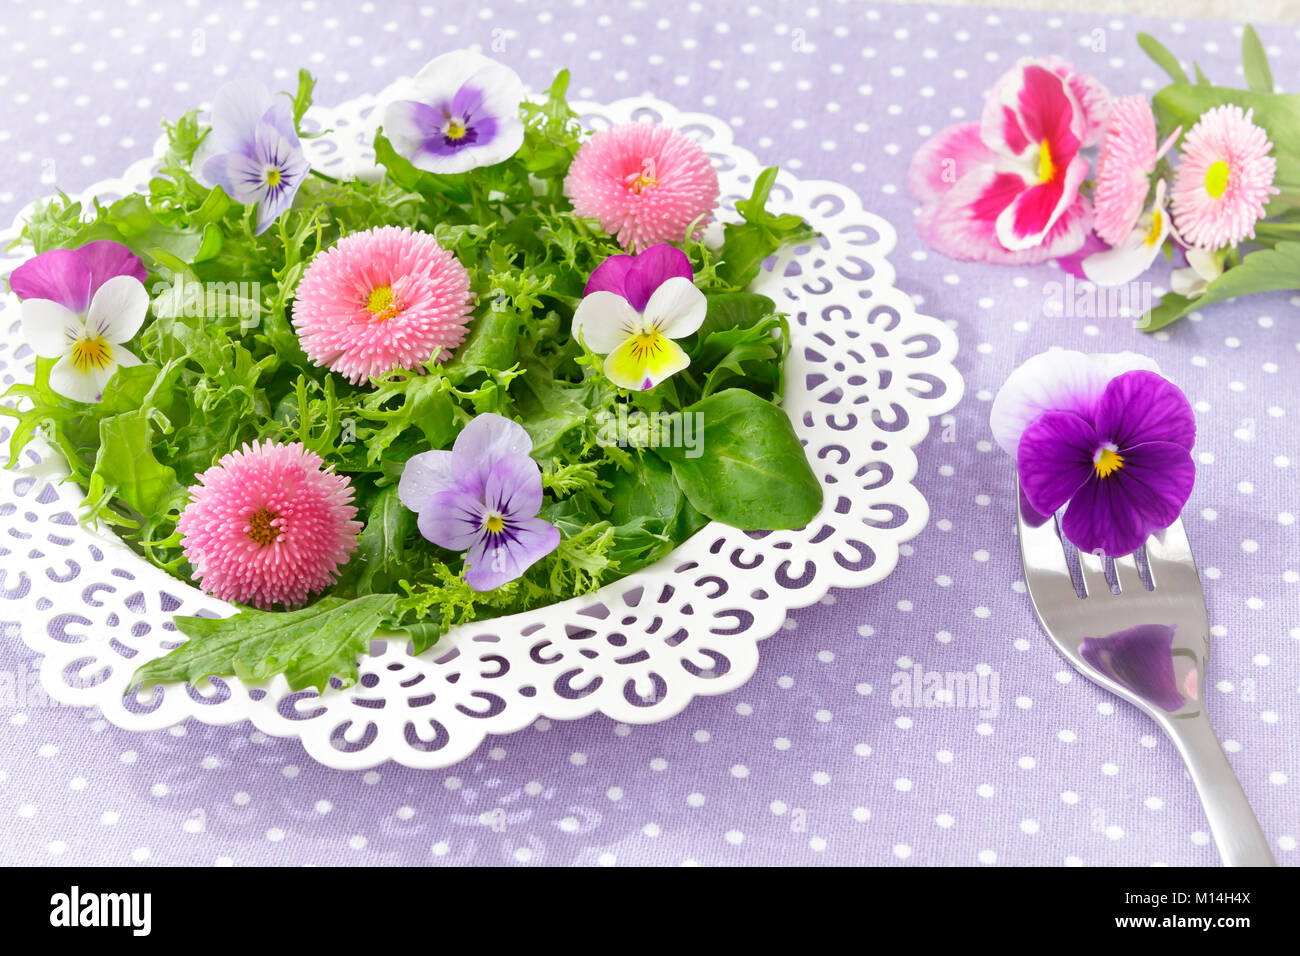 Weiße Platte mit einem Salat von Gemischte grüne Salatblätter und genießbare Gänseblümchen und Stiefmütterchen Blumen, zusammen mit einer alten Gabel auf eine nostalgische Lila backgroun Stockfoto